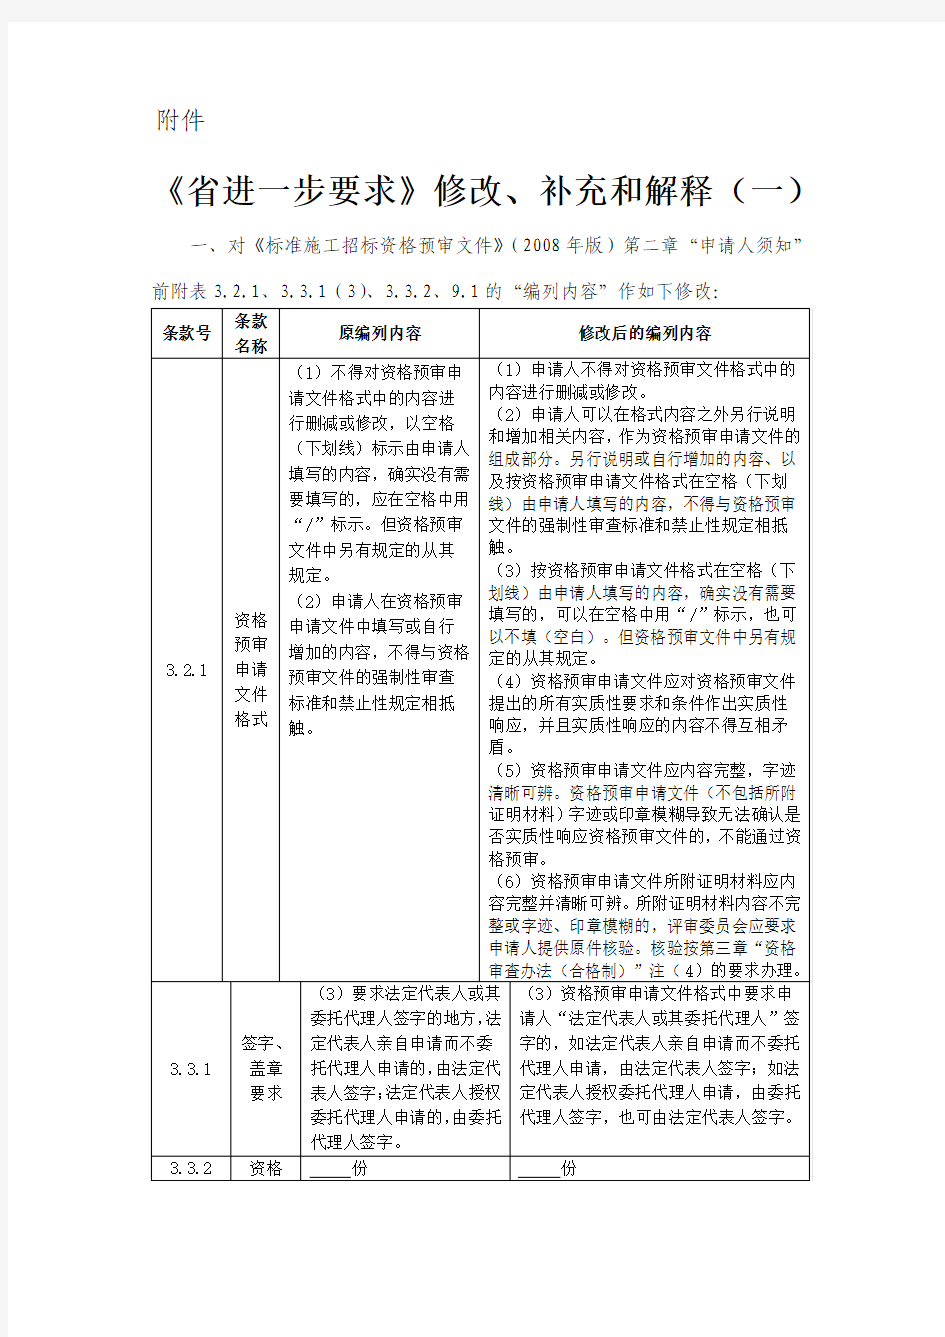 四川省发展和改革委员会川发改政策〔2009〕1049号